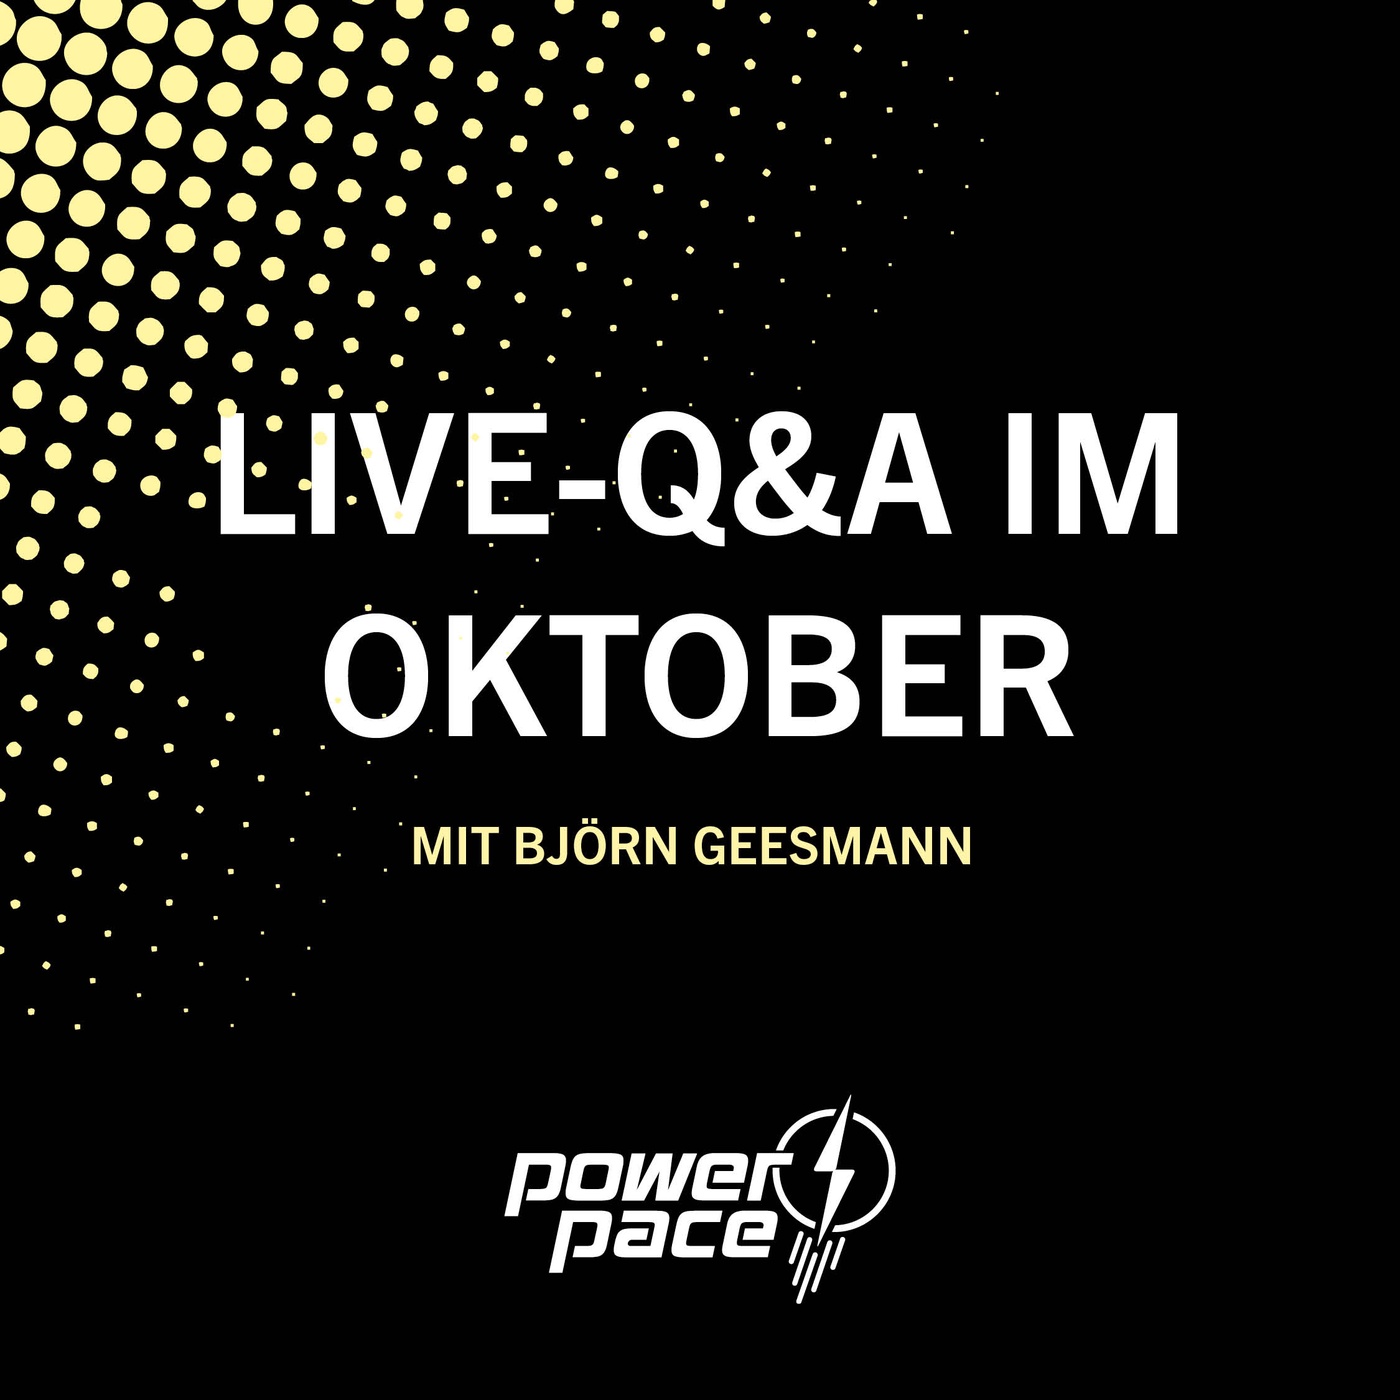 Die Live-Q&A im Oktober